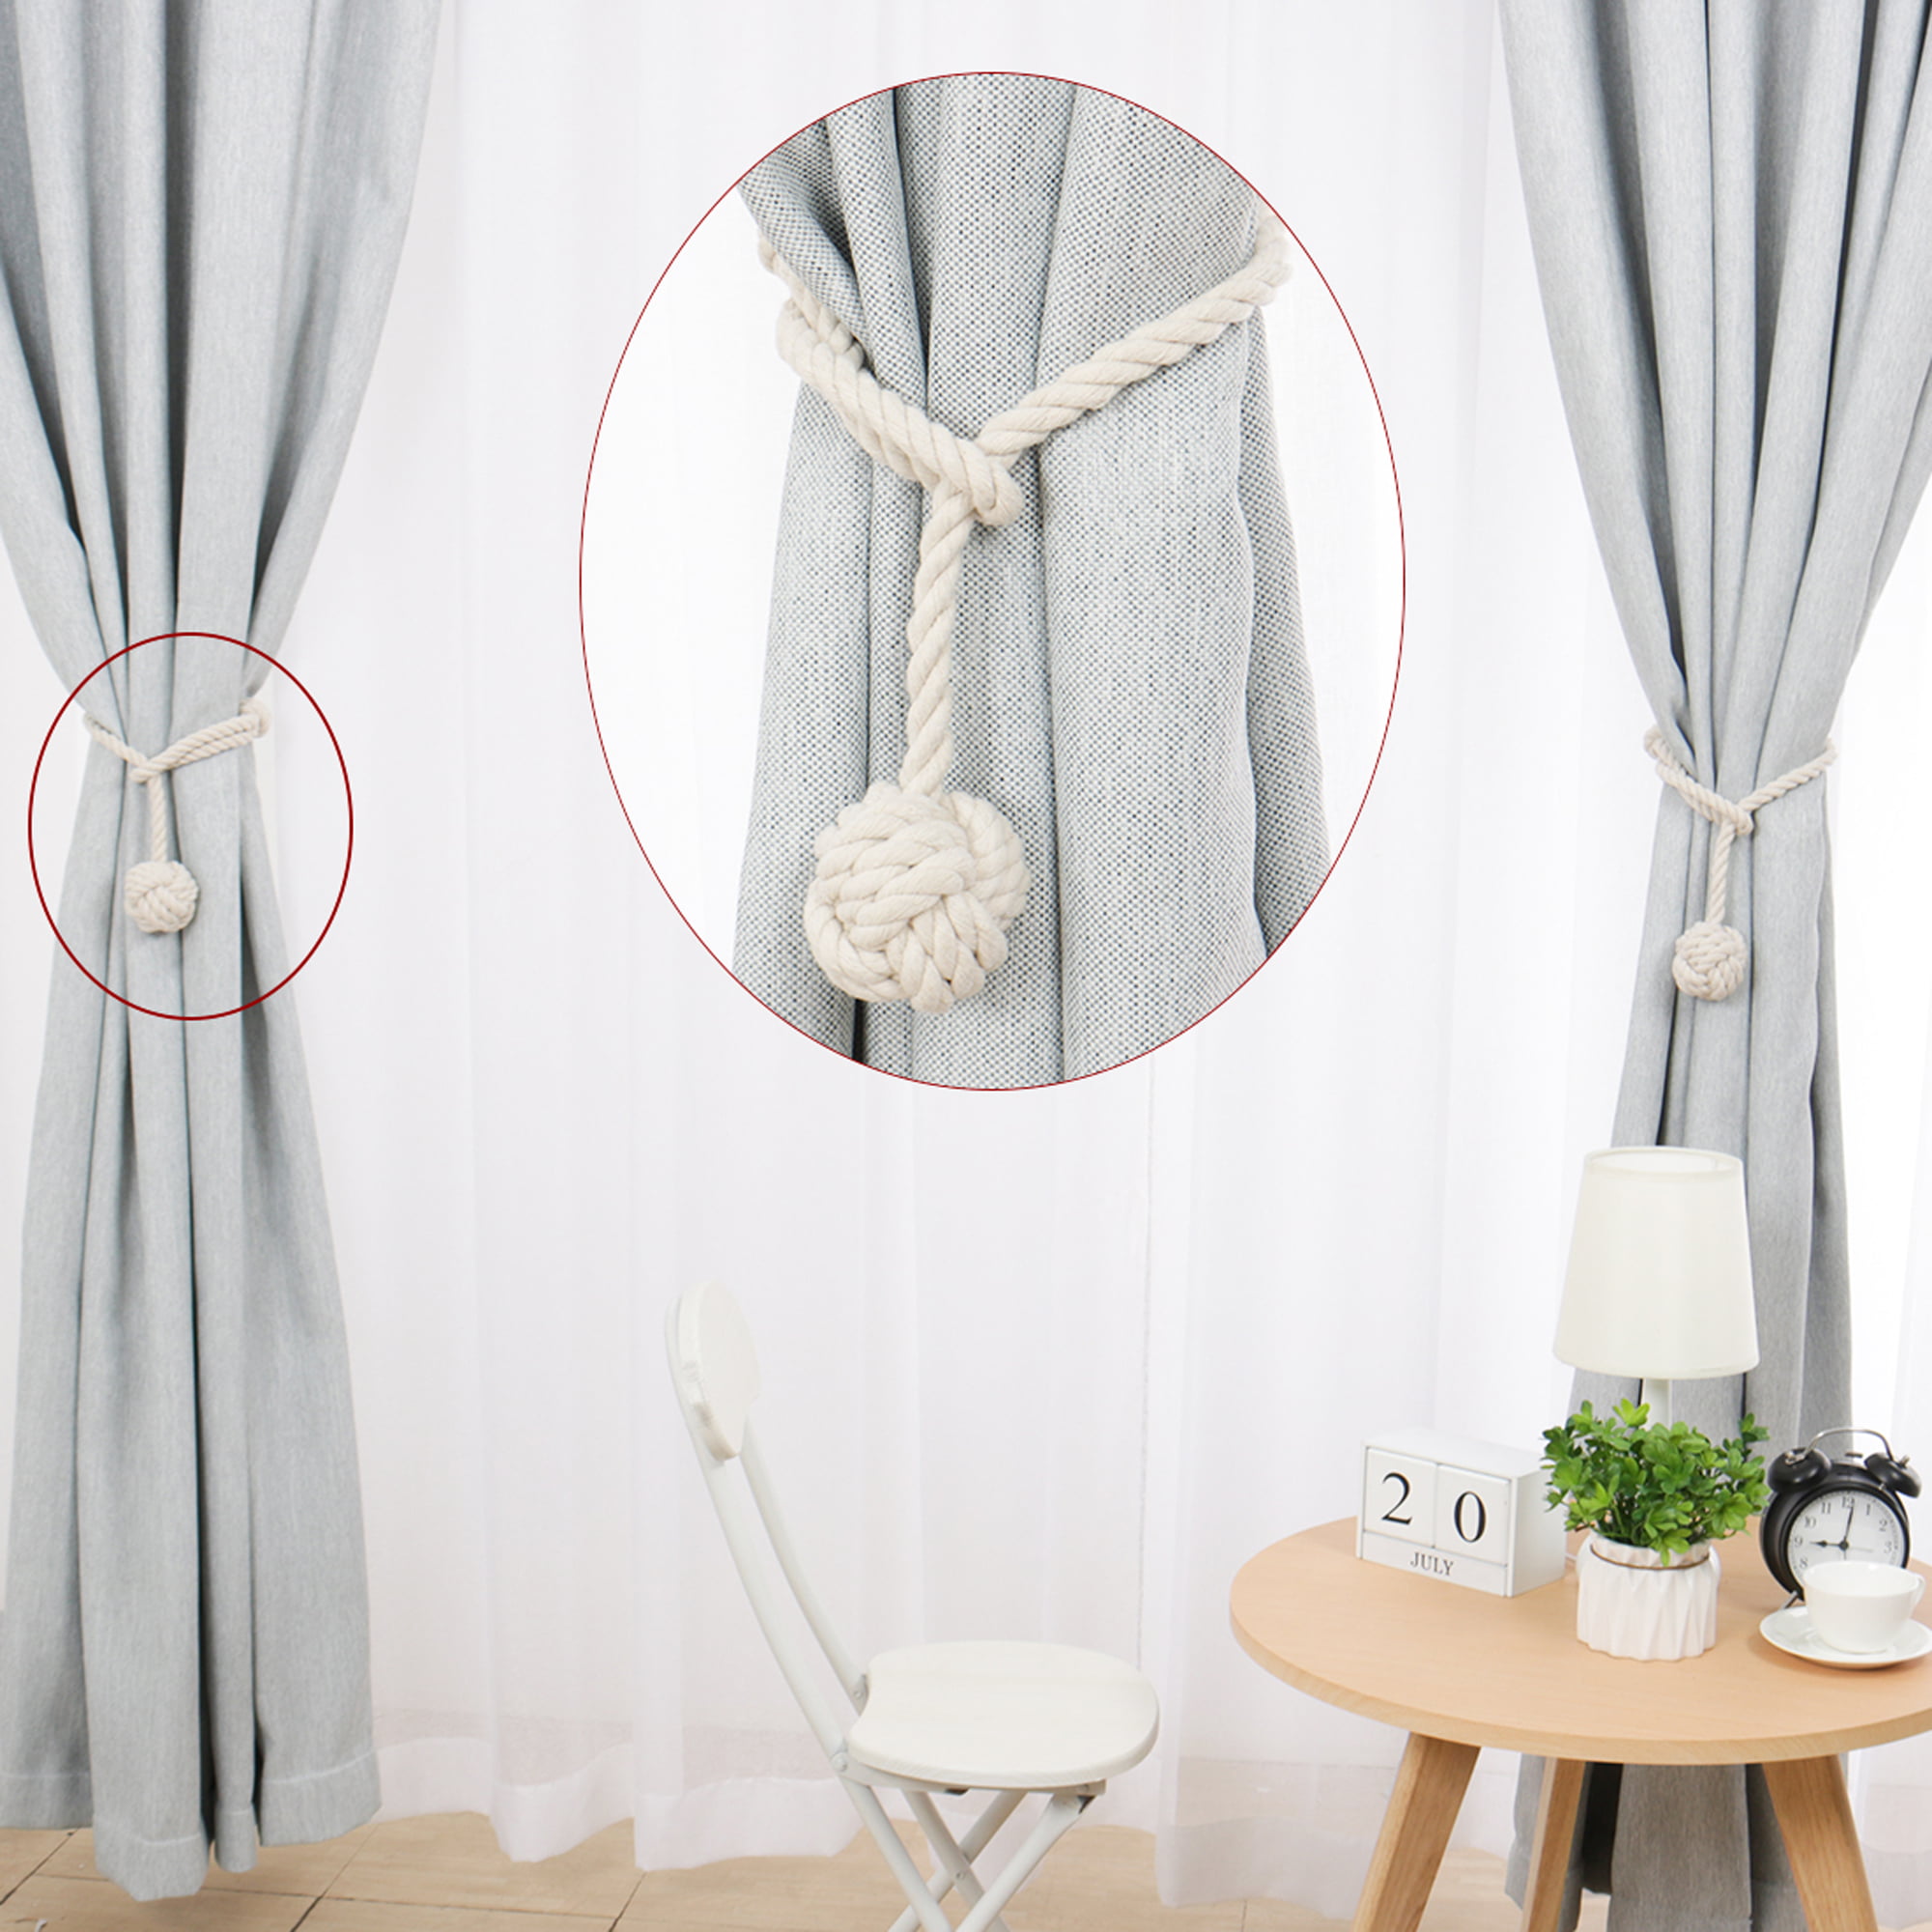 1 Pair Window Curtain Rope Tie Backs Tieback Living Room Bedroom Tassel Ornament 